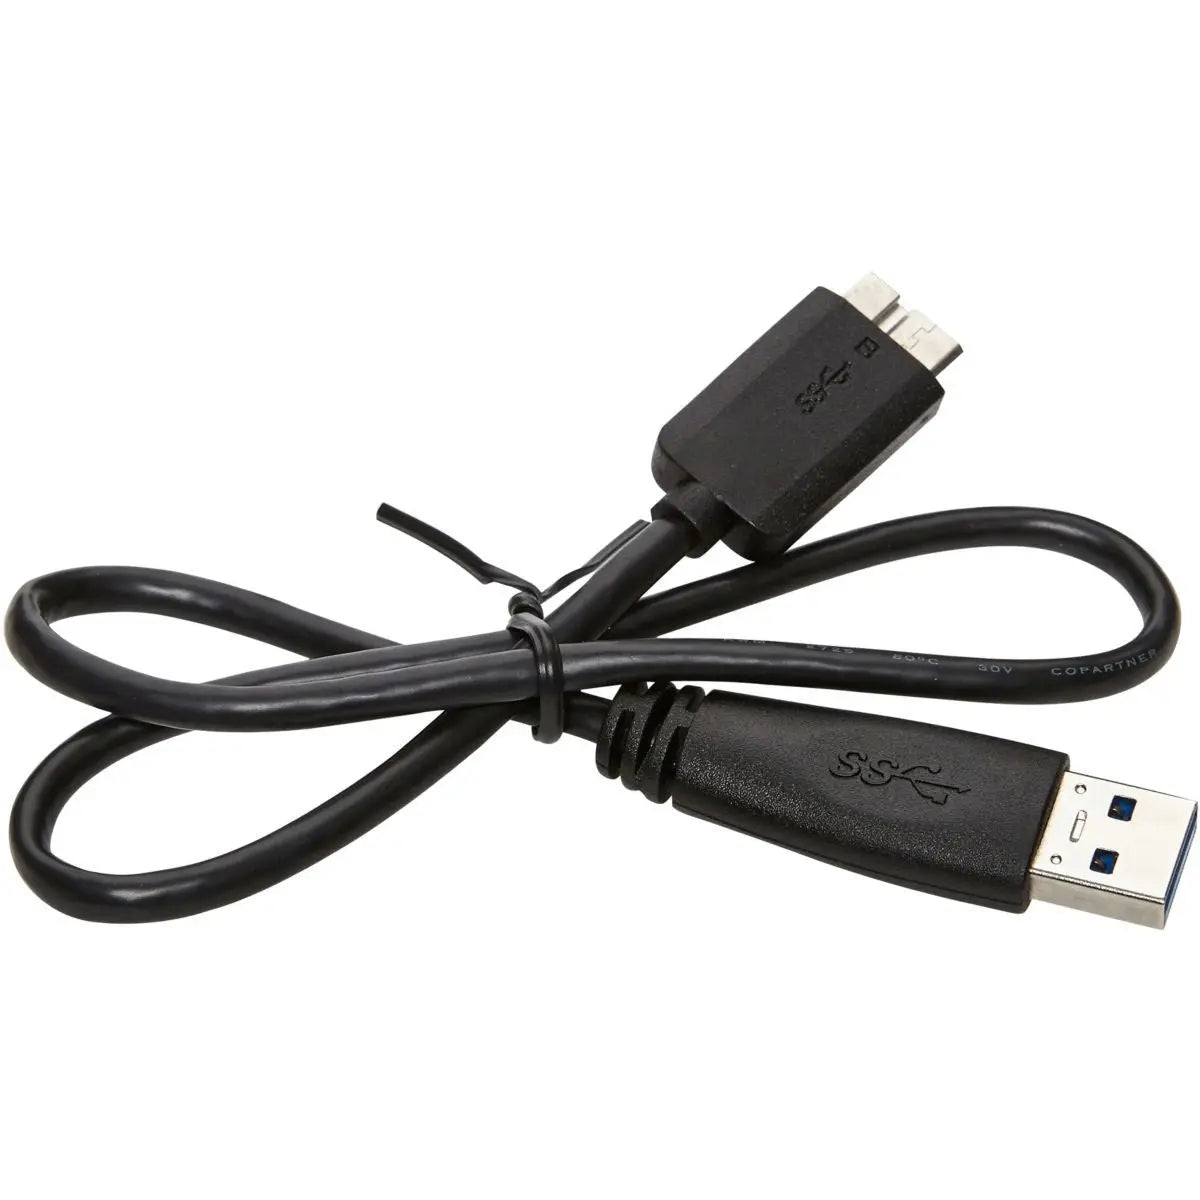 Disque Dur Externe 1To - M3 Portable USB 3.0 Noir